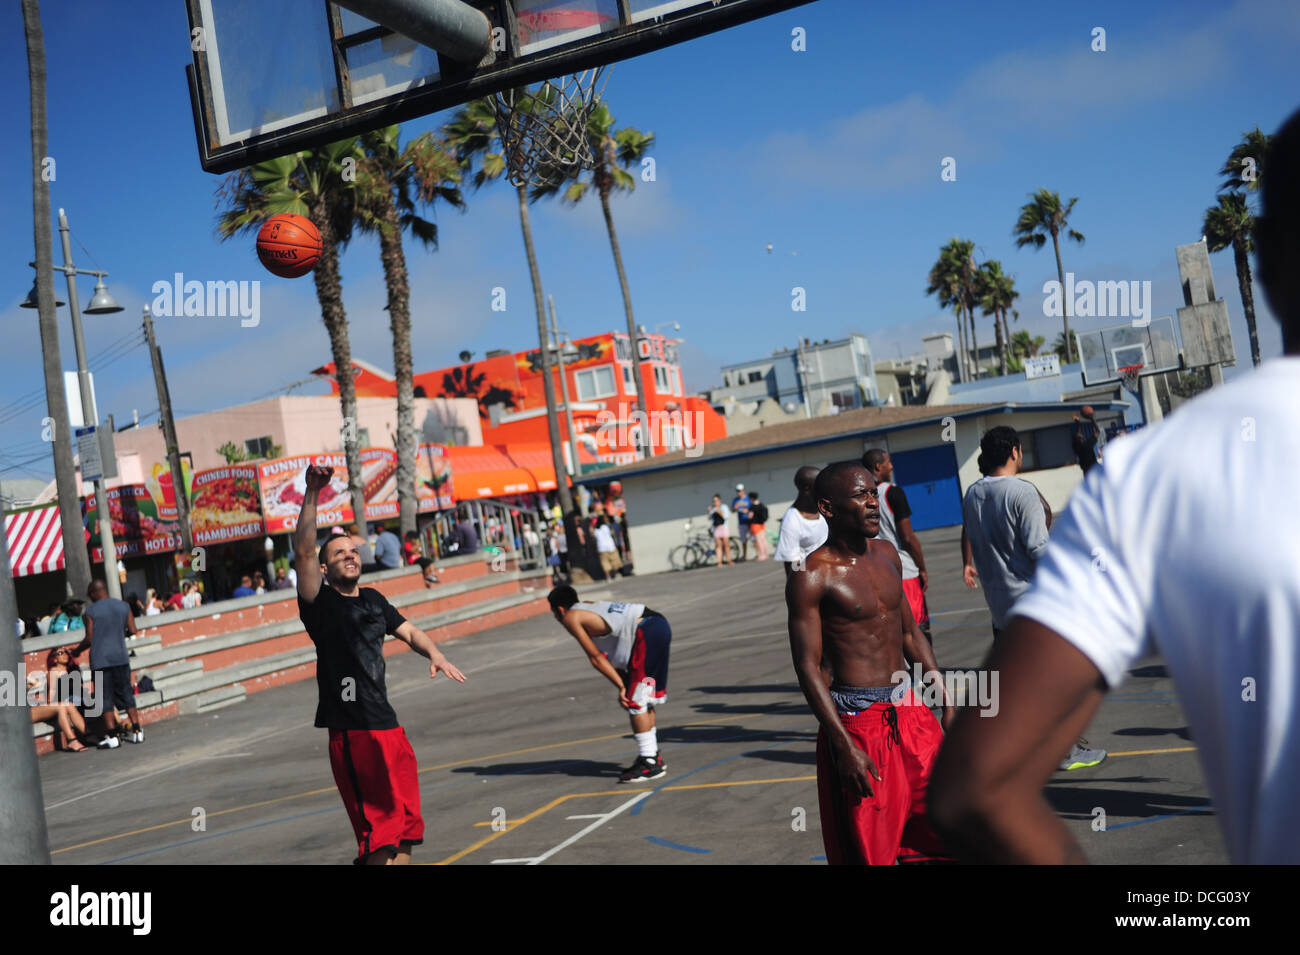 CA États-unis Californie Los Angeles L.A. LA plage de Venise un pick up de jeu de basket-ball à Muscle Beach race mixte Banque D'Images